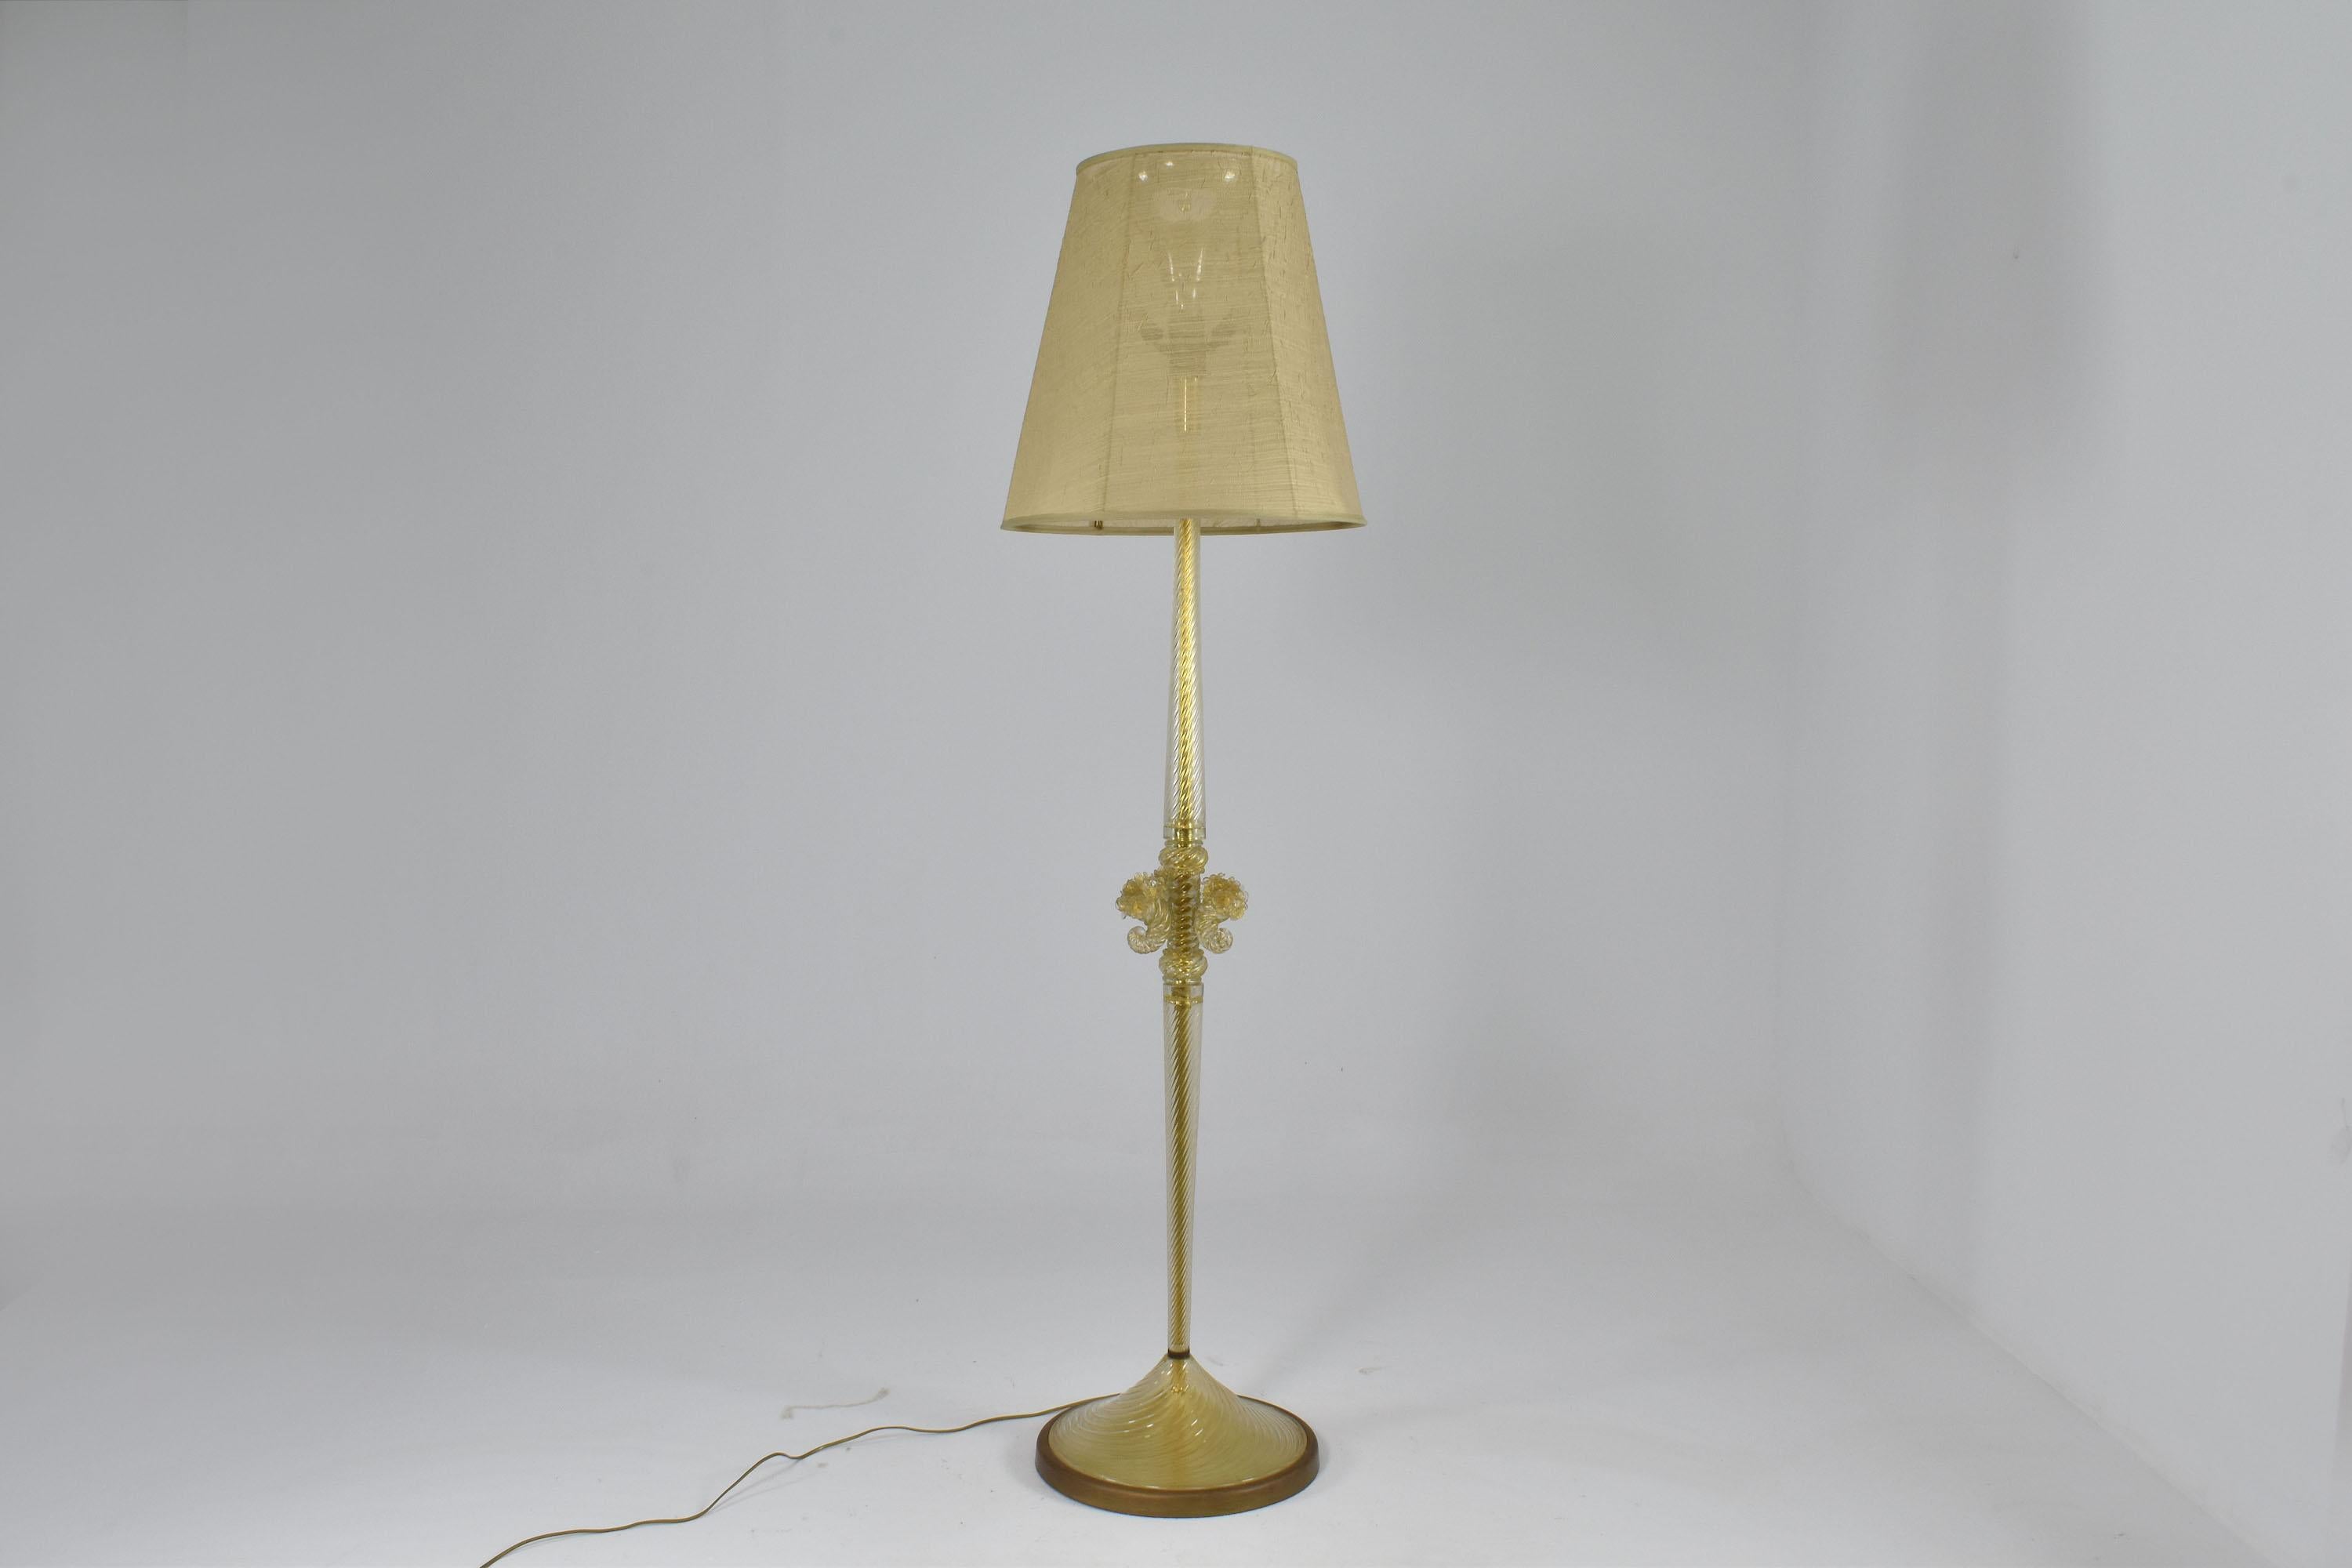 Un exquis lampadaire italien moderne de Murano du milieu du siècle dernier, vers les années 1950, en très bon état, avec une structure en verre de Murano infusé à l'or de Barovier&Toso. 
Barovier&Toso, réputé pour sa maîtrise de la verrerie, a une